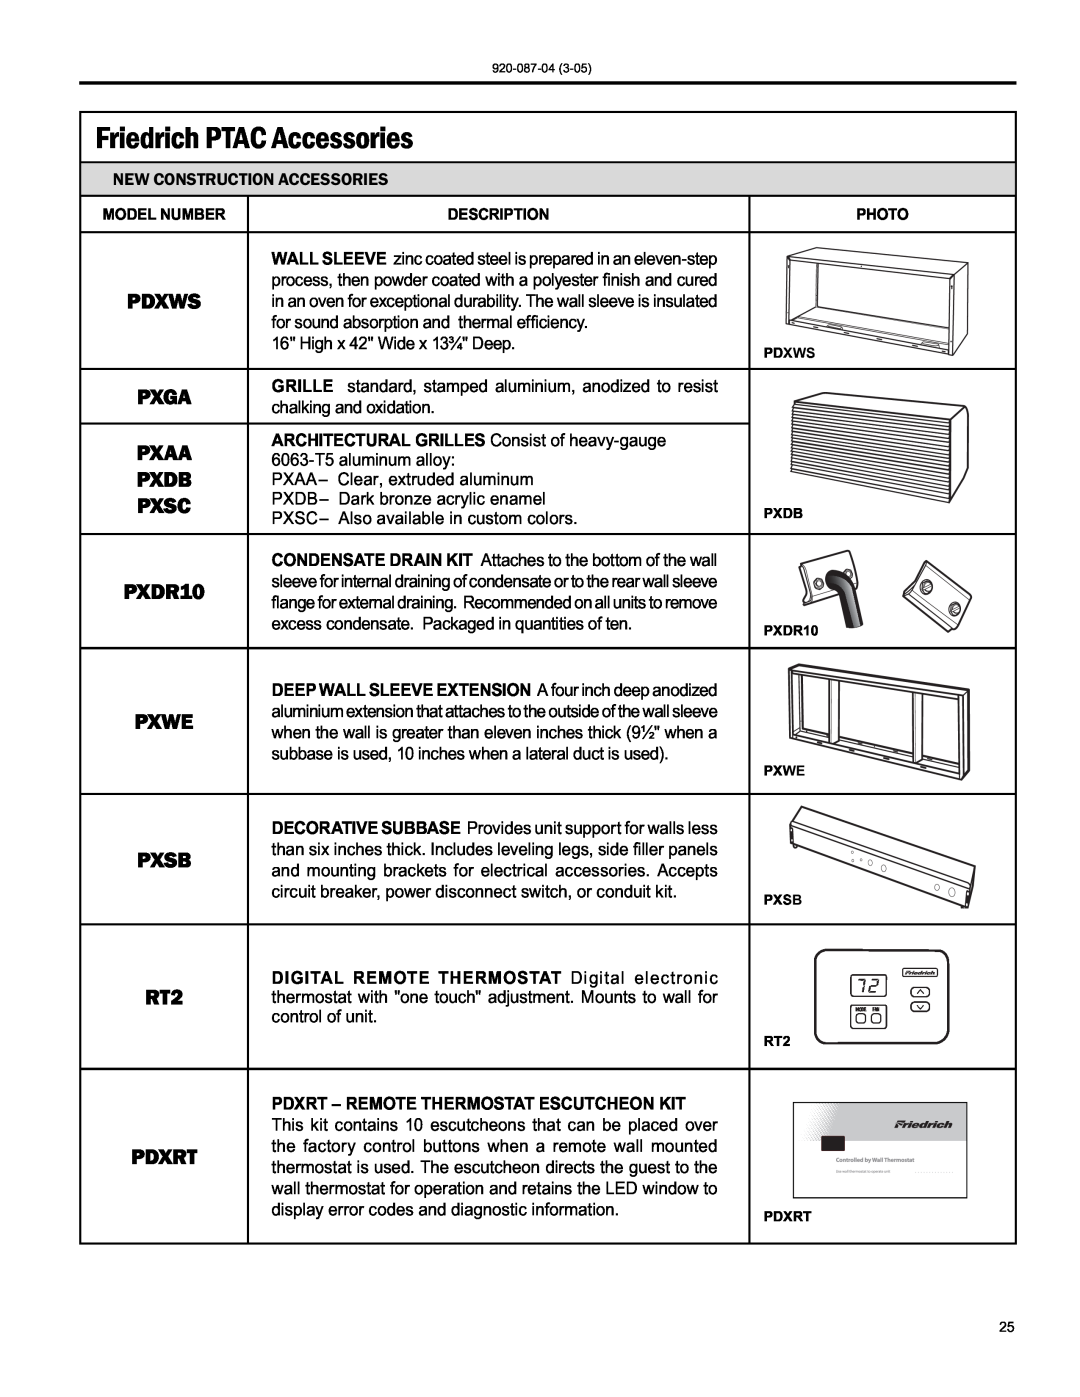 Friedrich 920-087-04 (3-05) manual Friedrich PTAC Accessories 